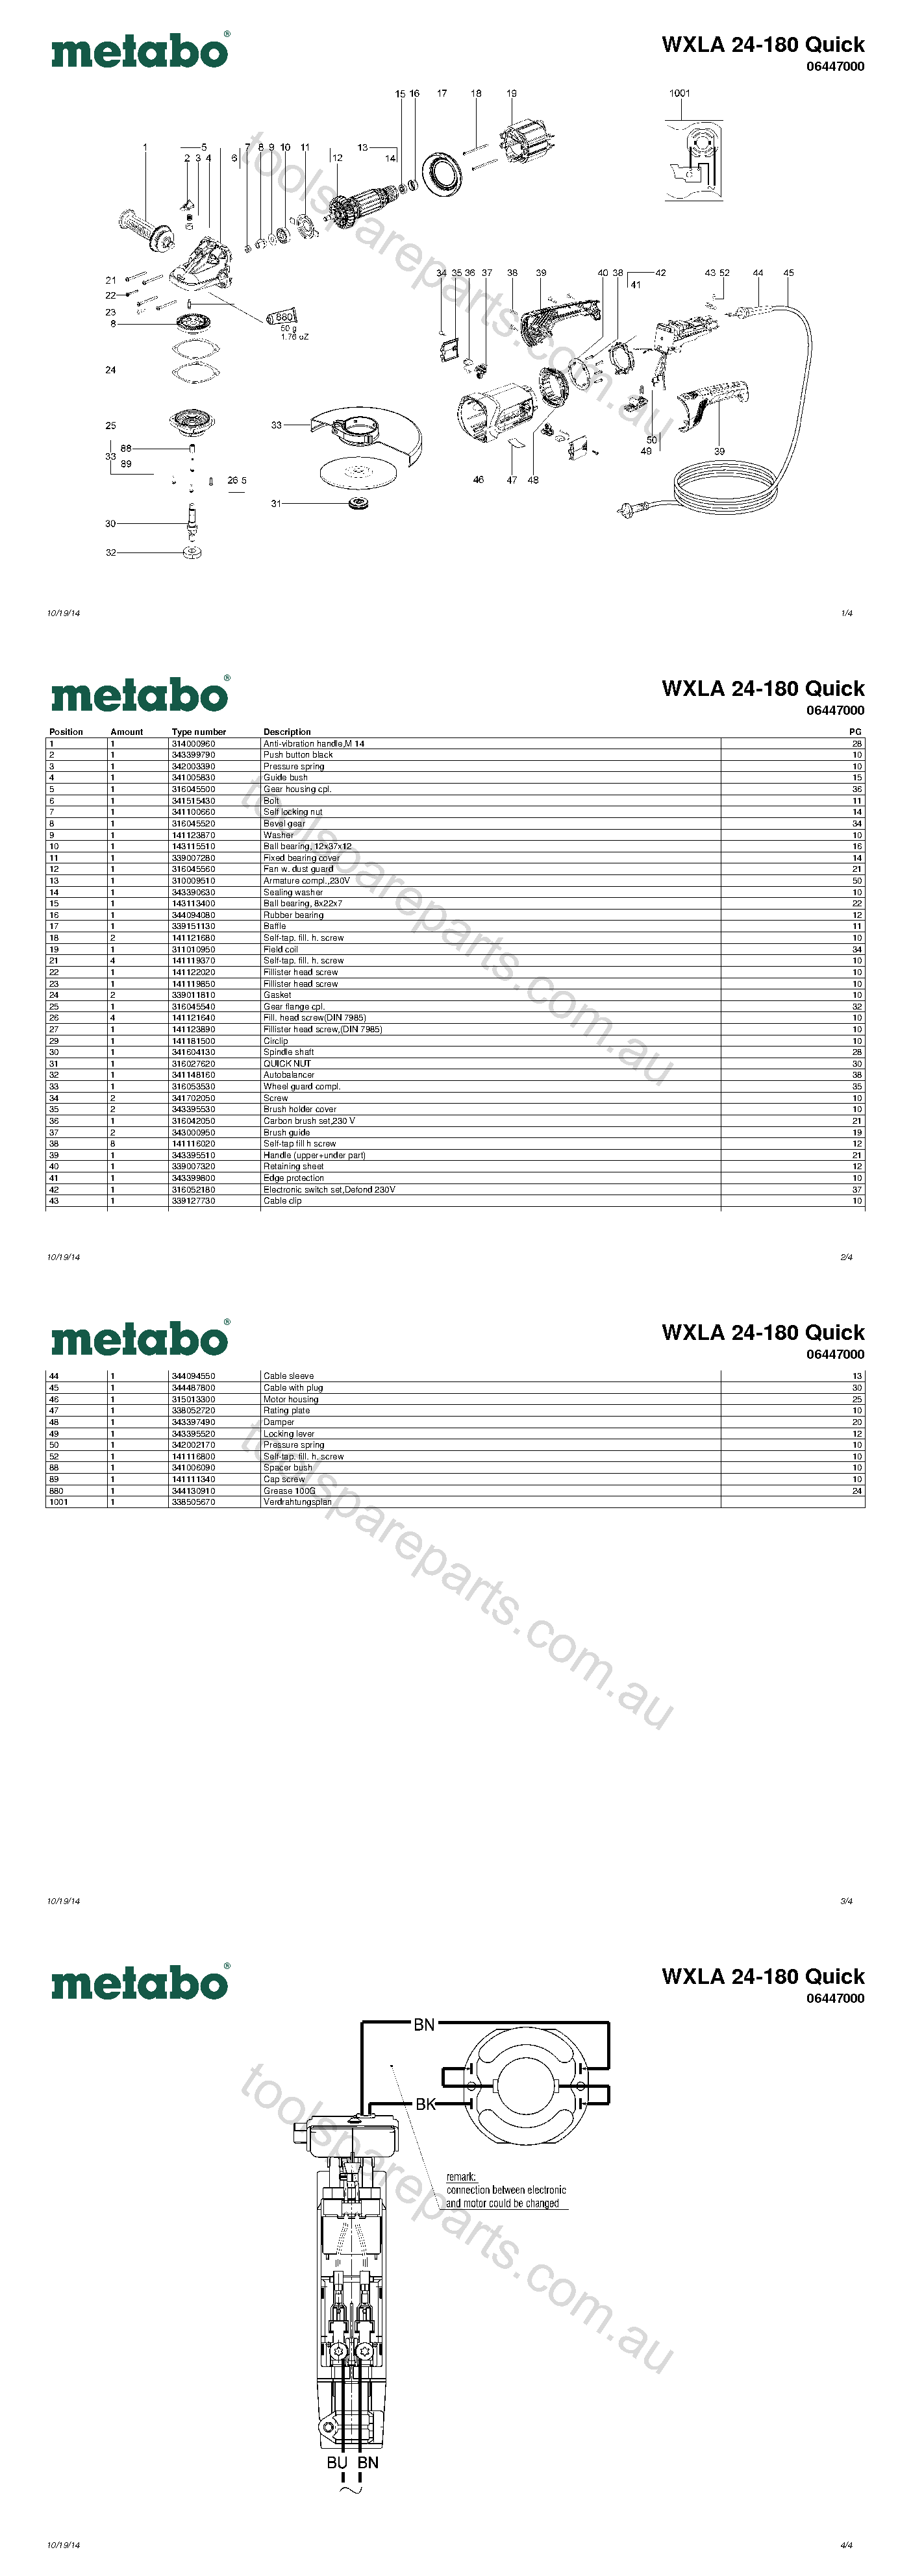 Metabo WXLA 24-180 Quick 06447000  Diagram 1